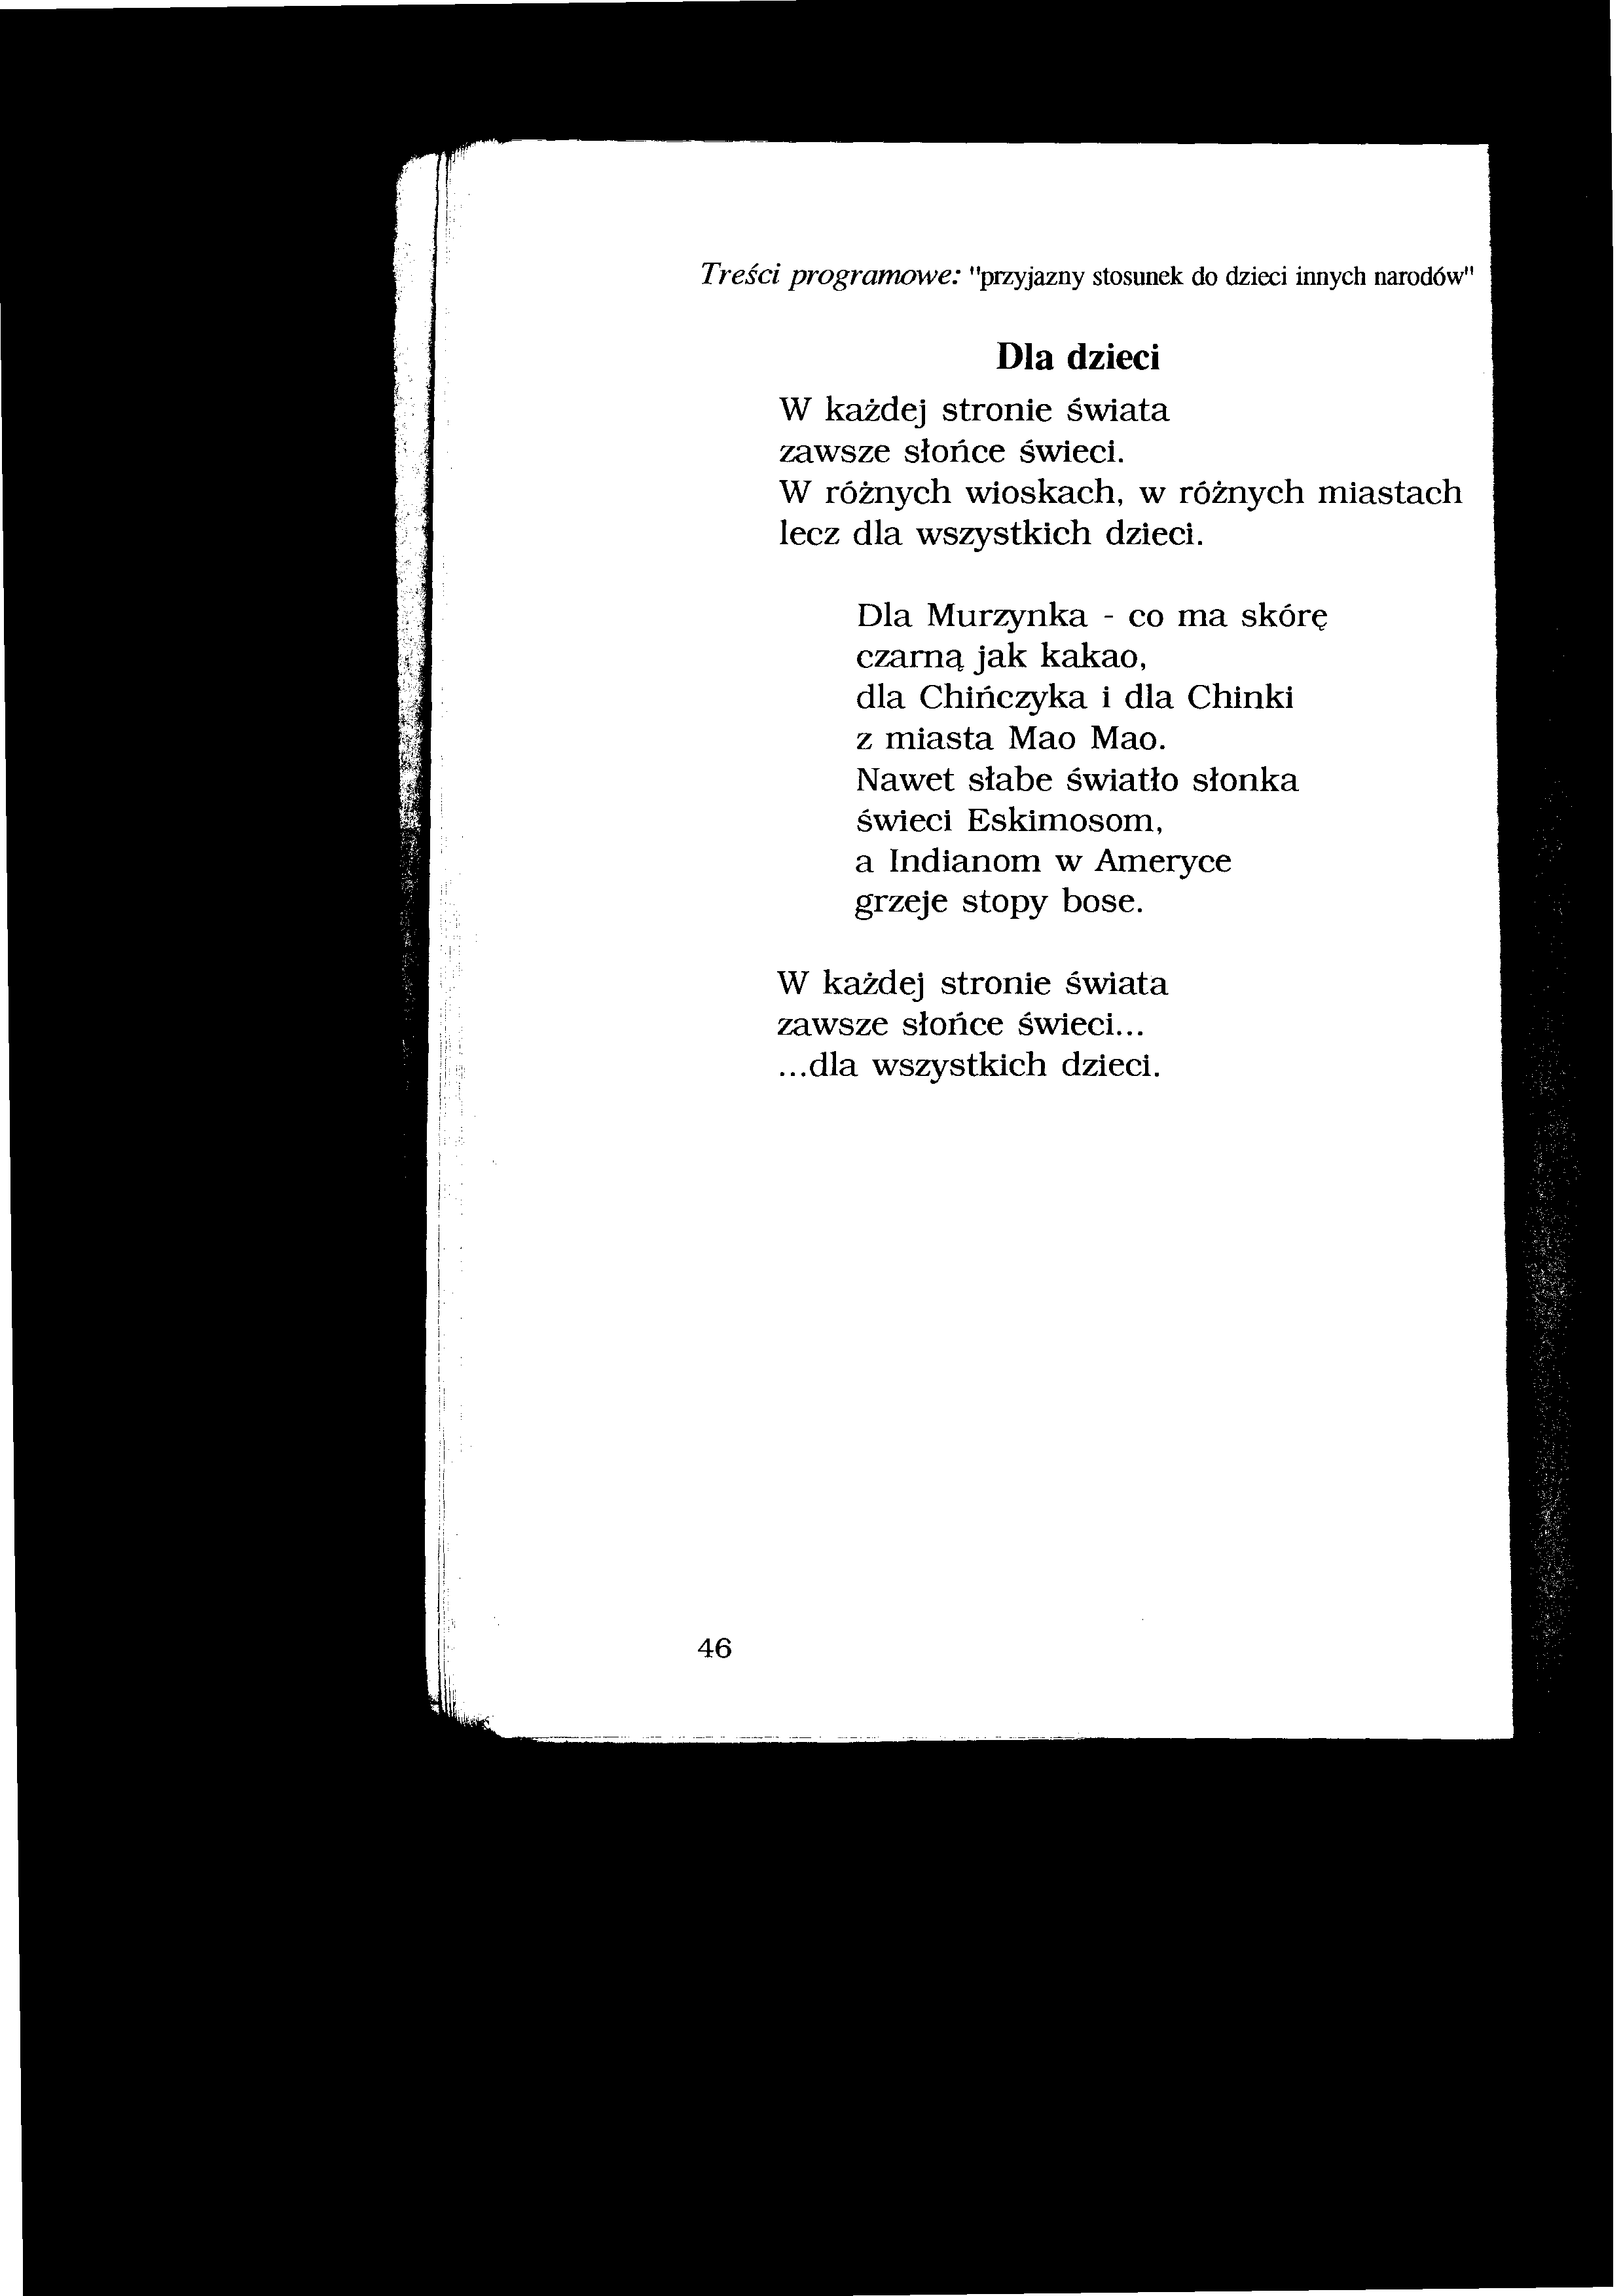 Wiersze Iwony Salach - Pięciolatki 46.tif